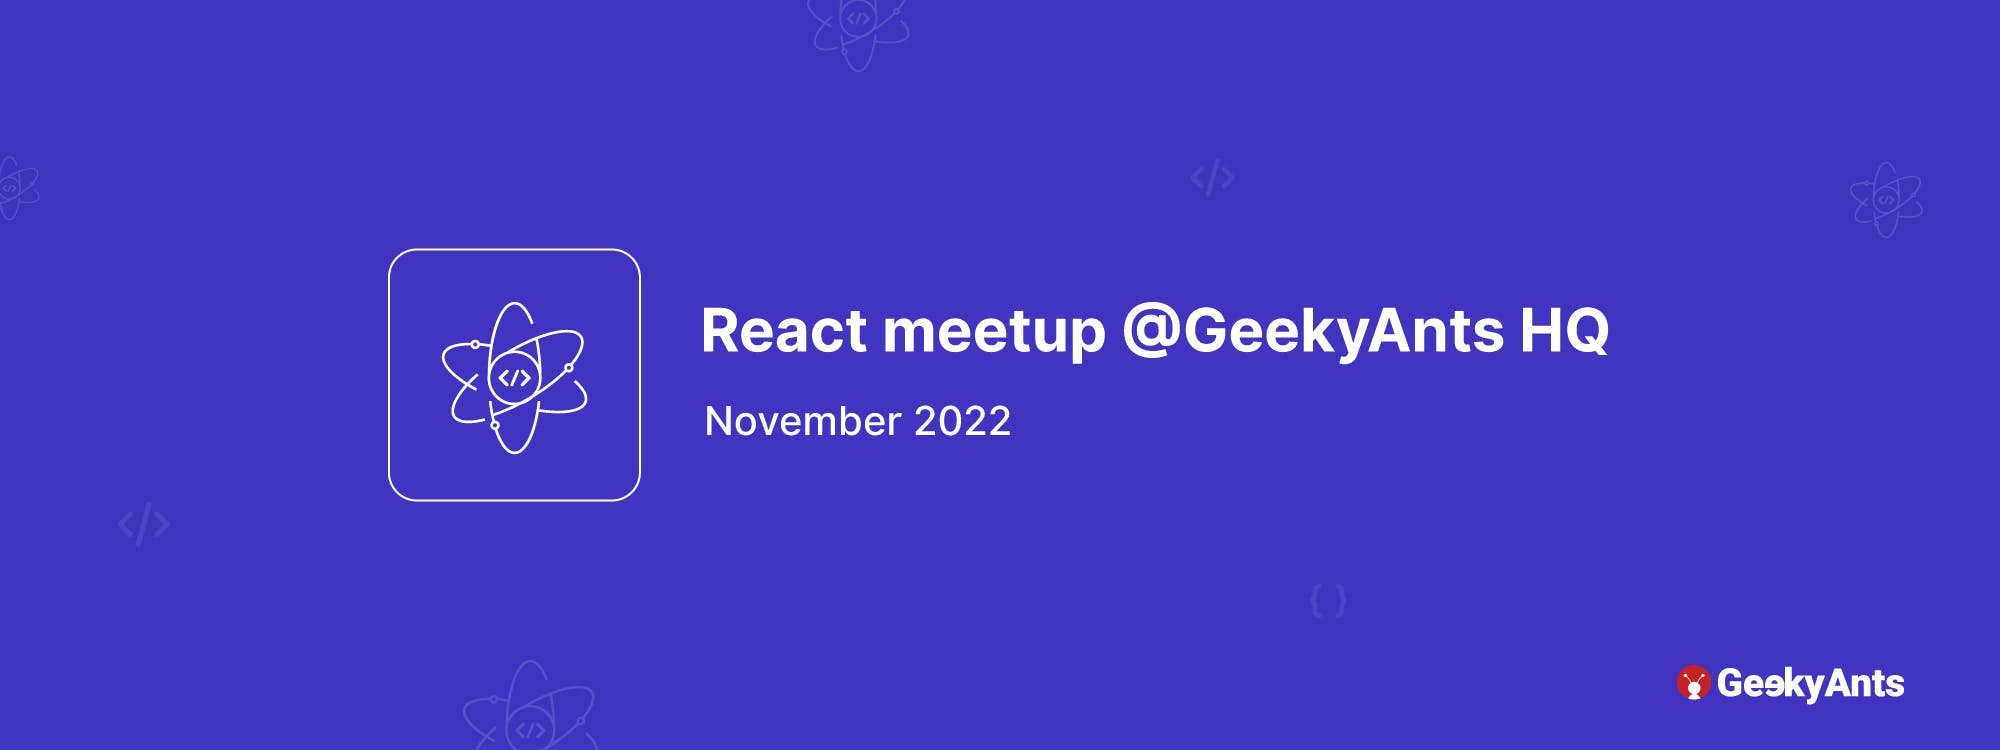 React meetup @GeekyAnts HQ